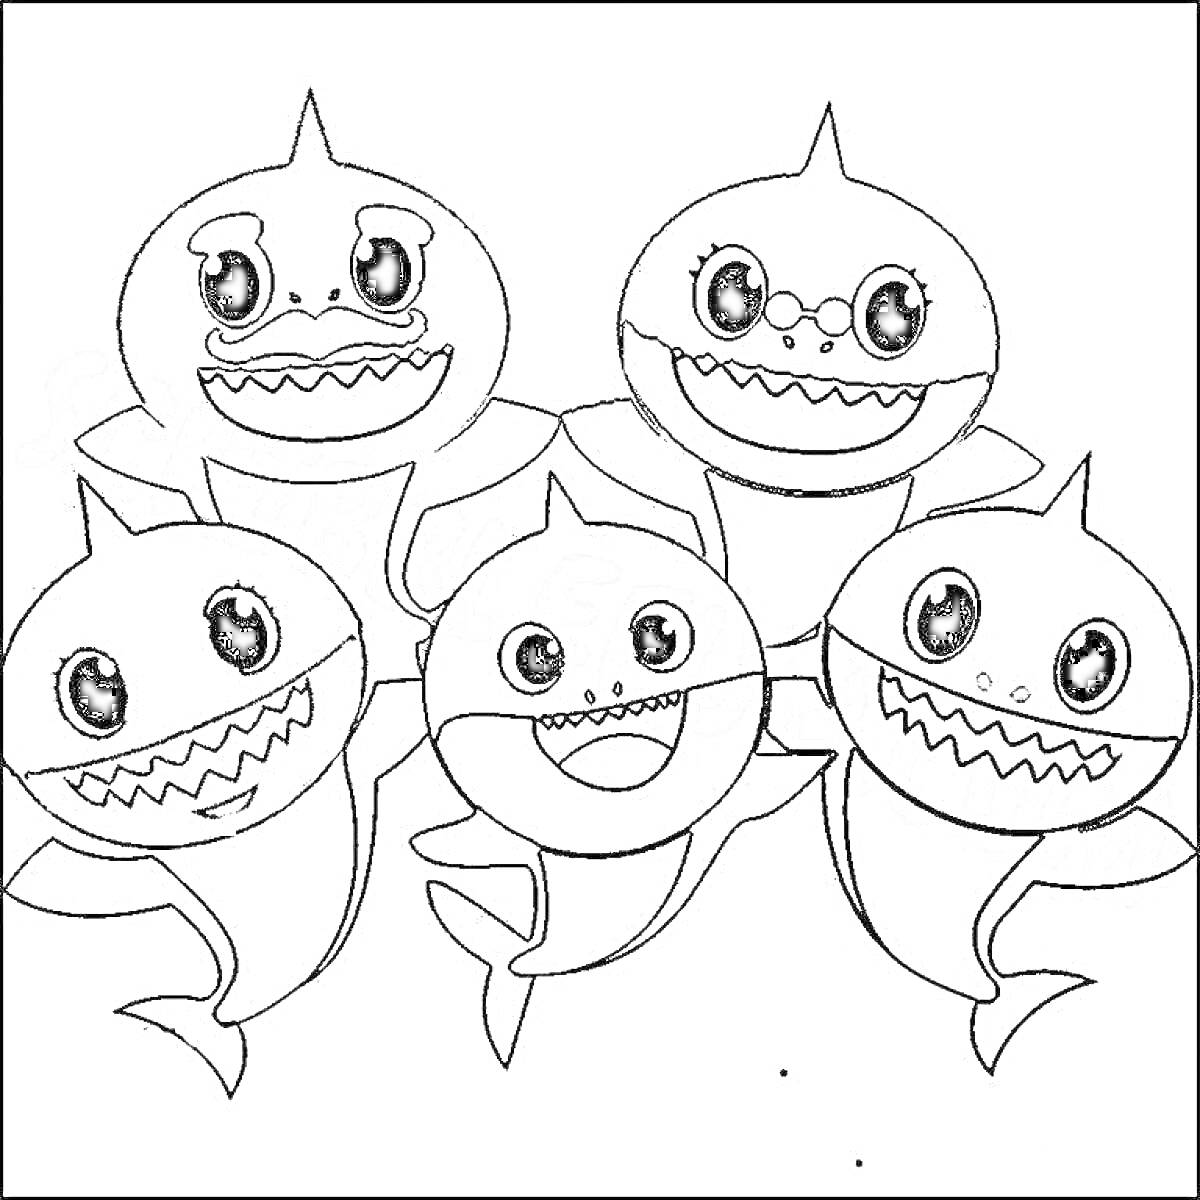 Раскраска группа улыбающихся акул, пять акул с большими глазами и зубастыми улыбками, одна в центре и по две с каждой стороны.